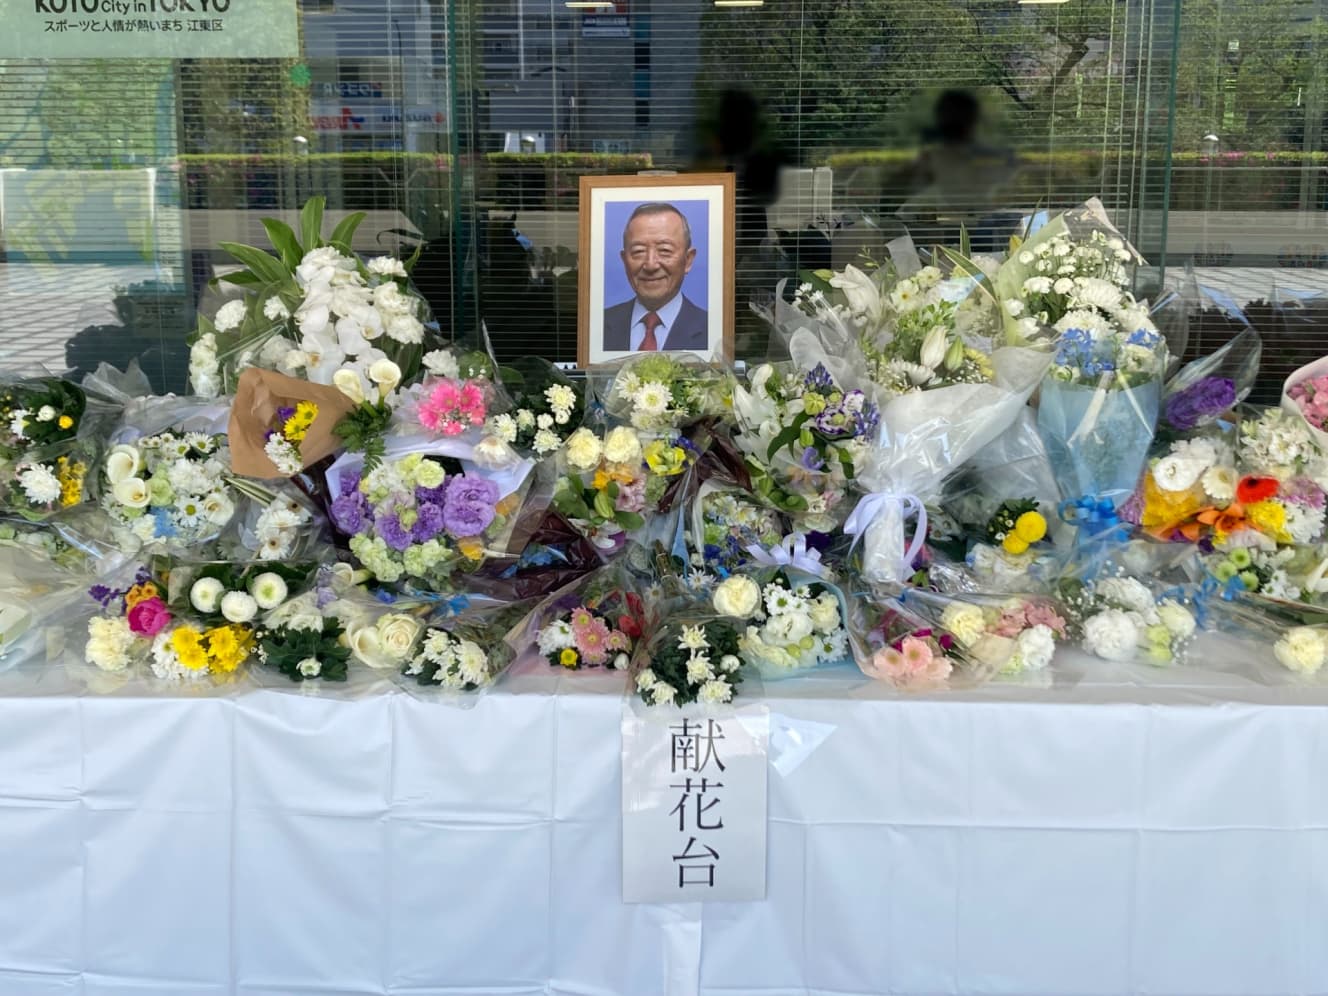 亡くなられた山崎孝明区長の献花台を見ると、区民から愛されていた様子が伝わる。